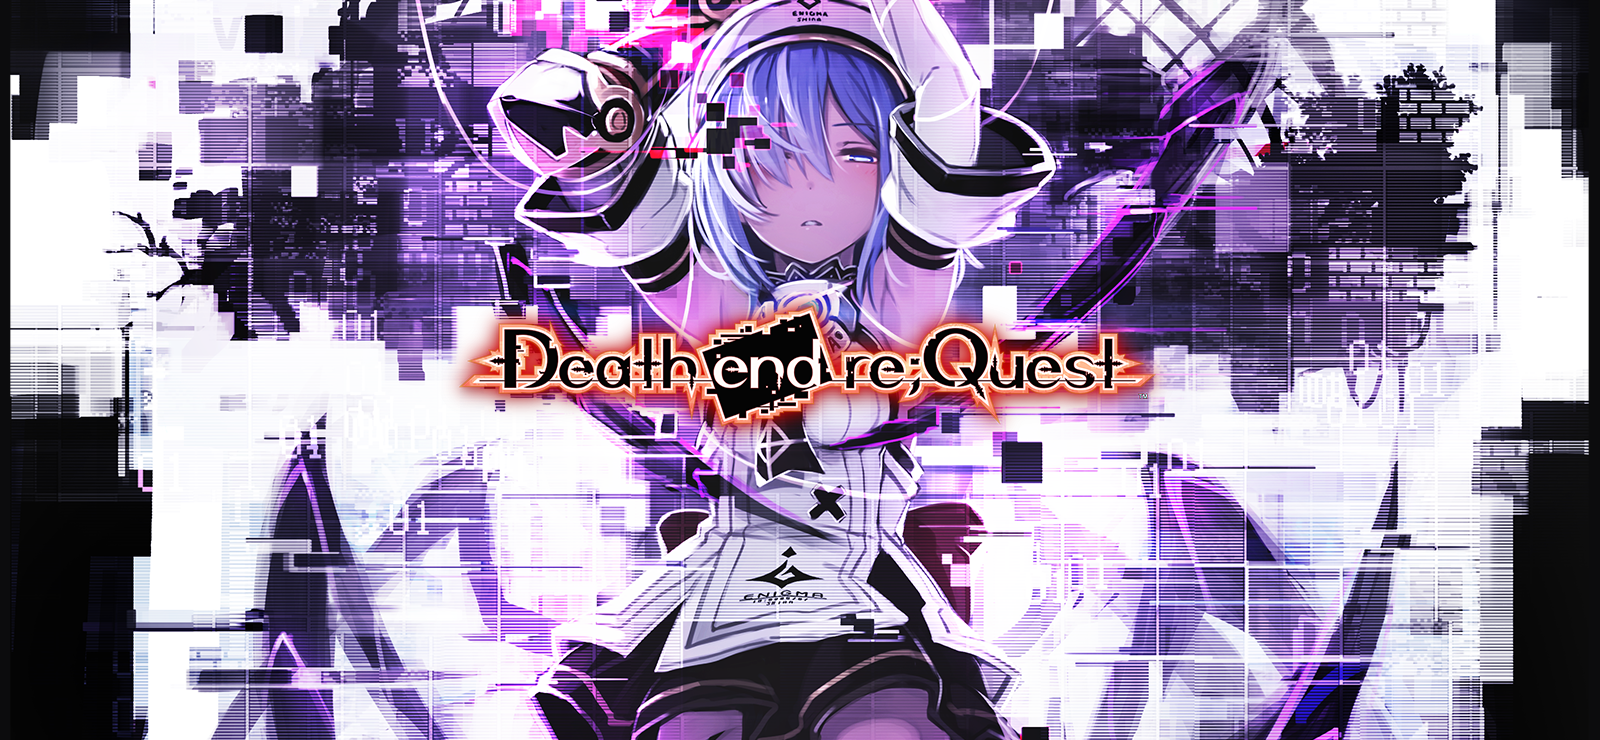 Death End Re;Quest